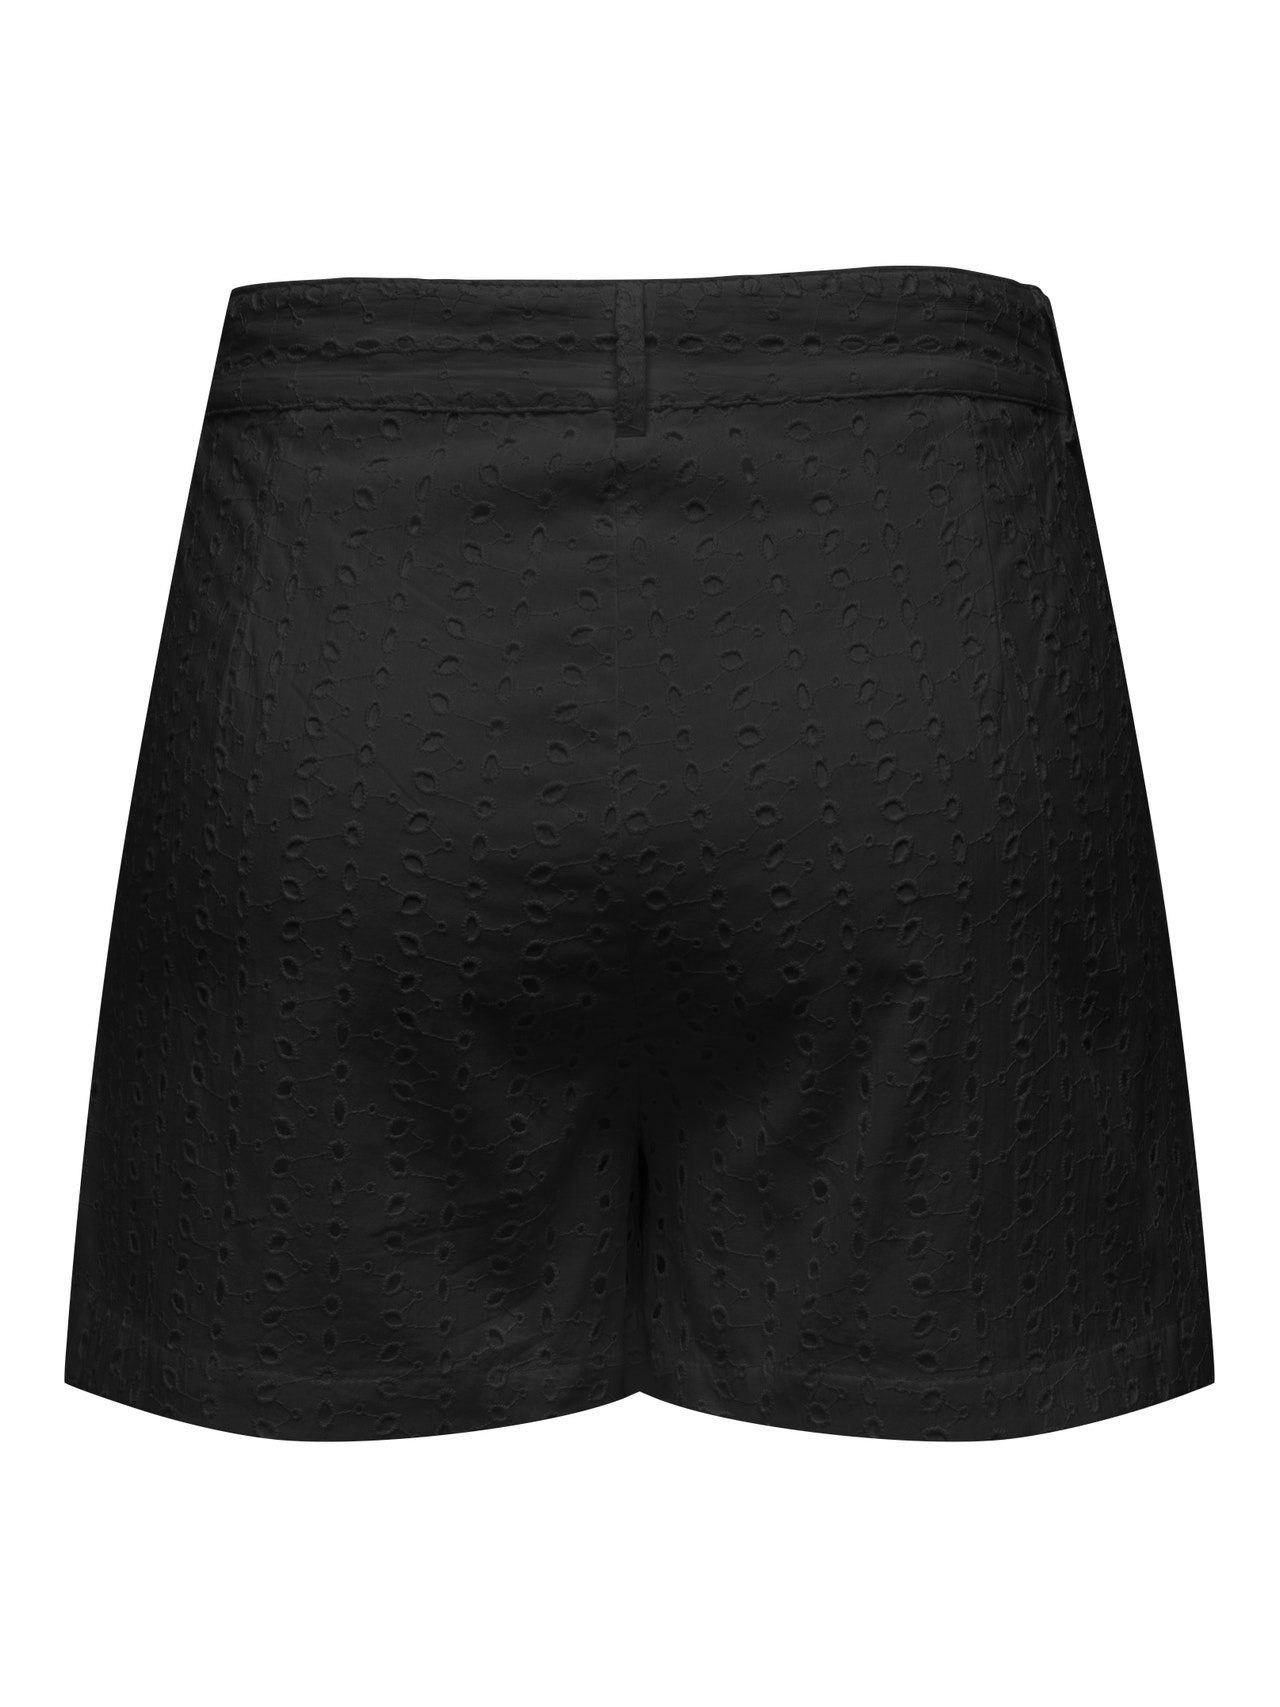 ONLY Regular Fit Shorts -Black - 15291874